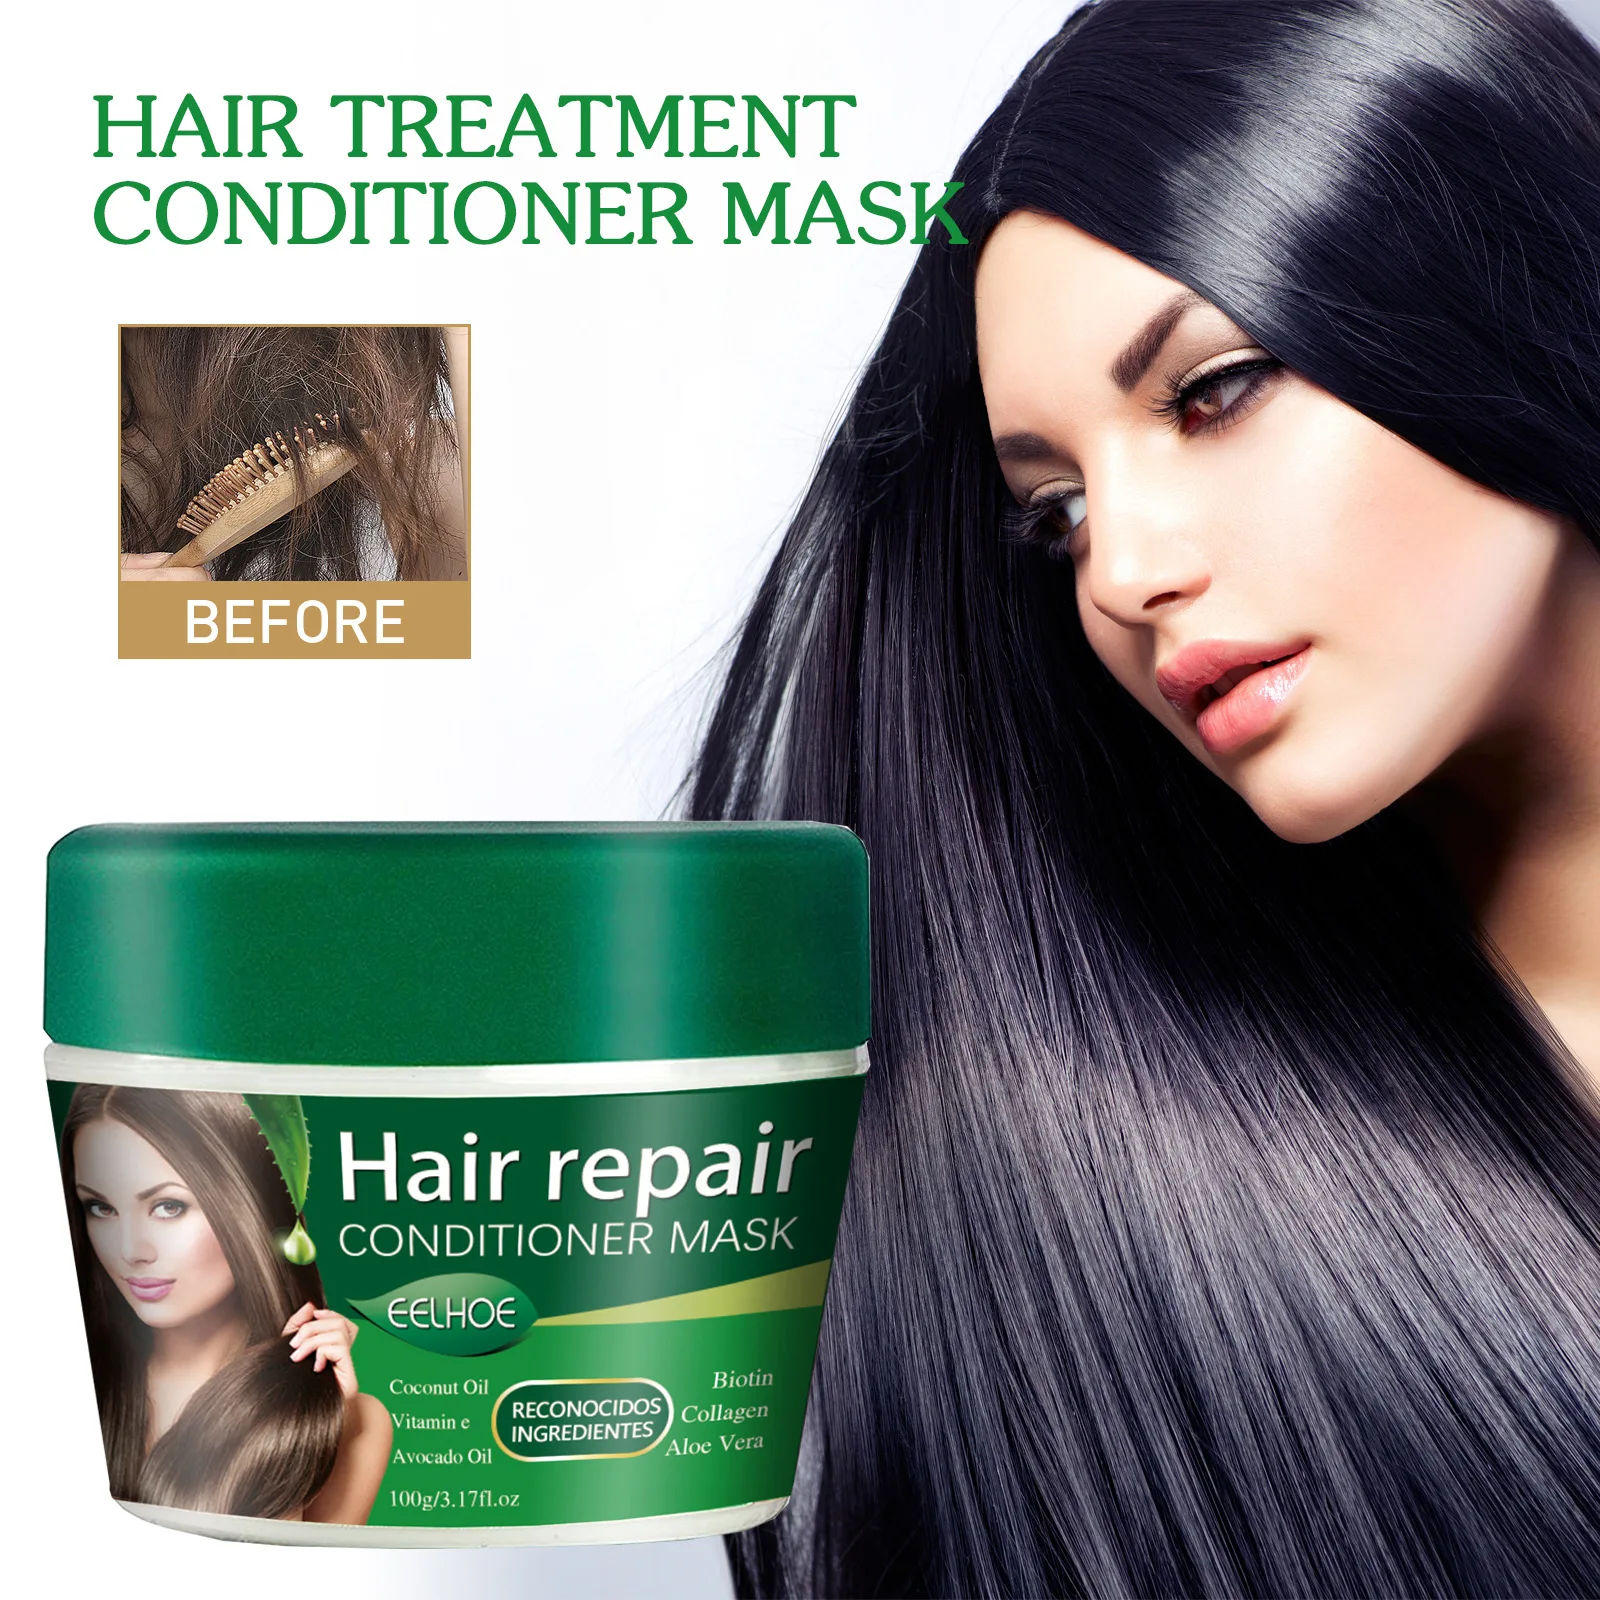 Кондиционер для волос восстанавливает волосы защищает волосы после окрашивания сухие волосы стойкий аромат мягкая эссенция для ухода за волосами Крем для ухода за волосами